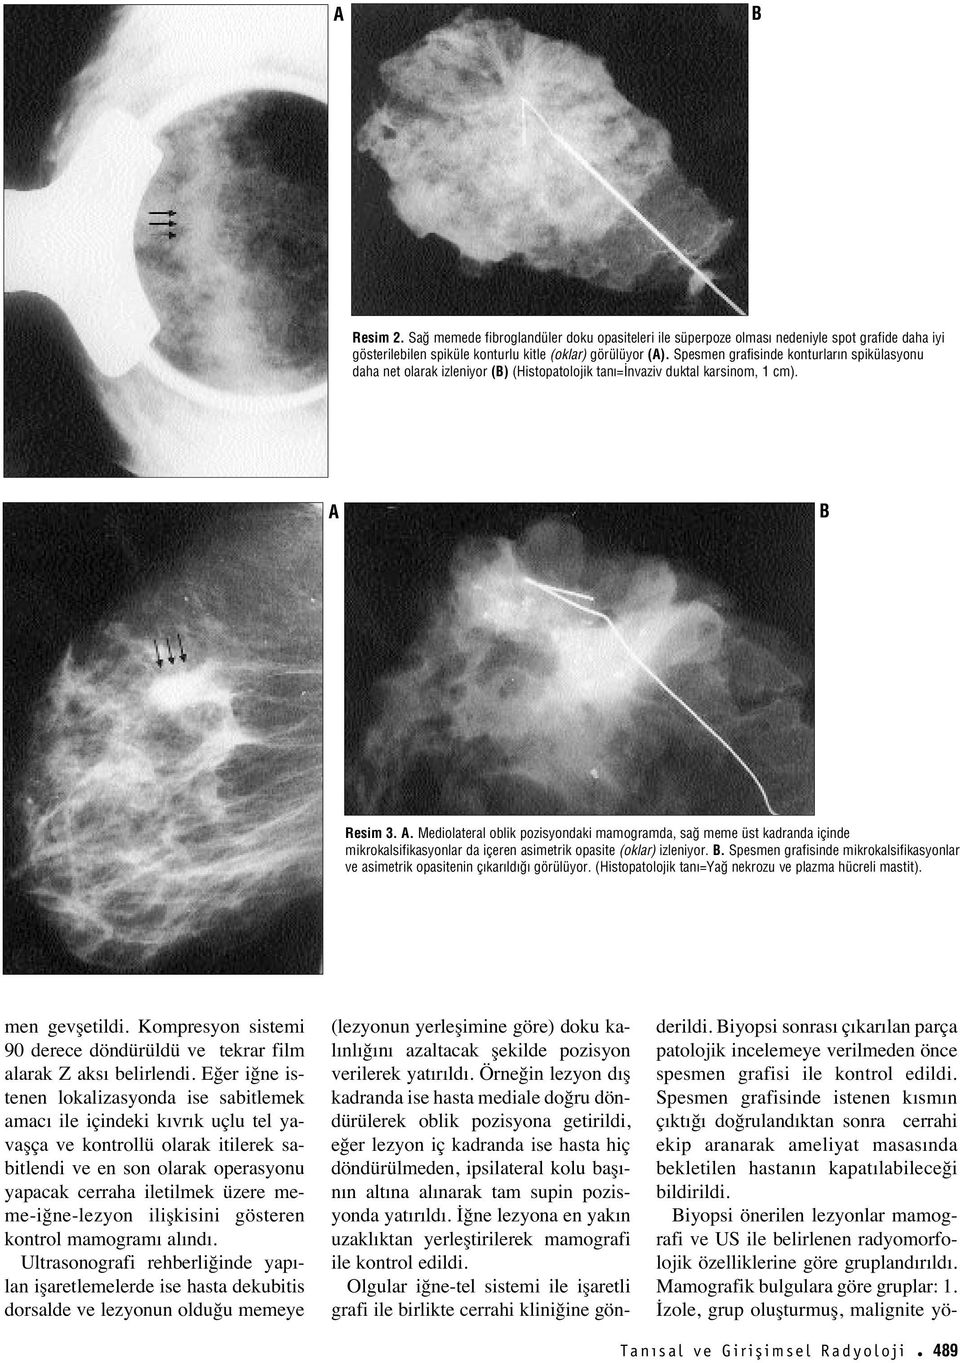 Resim 3. A. Mediolateral oblik pozisyondaki mamogramda, sa meme üst kadranda içinde mikrokalsifikasyonlar da içeren asimetrik opasite (oklar) izleniyor.